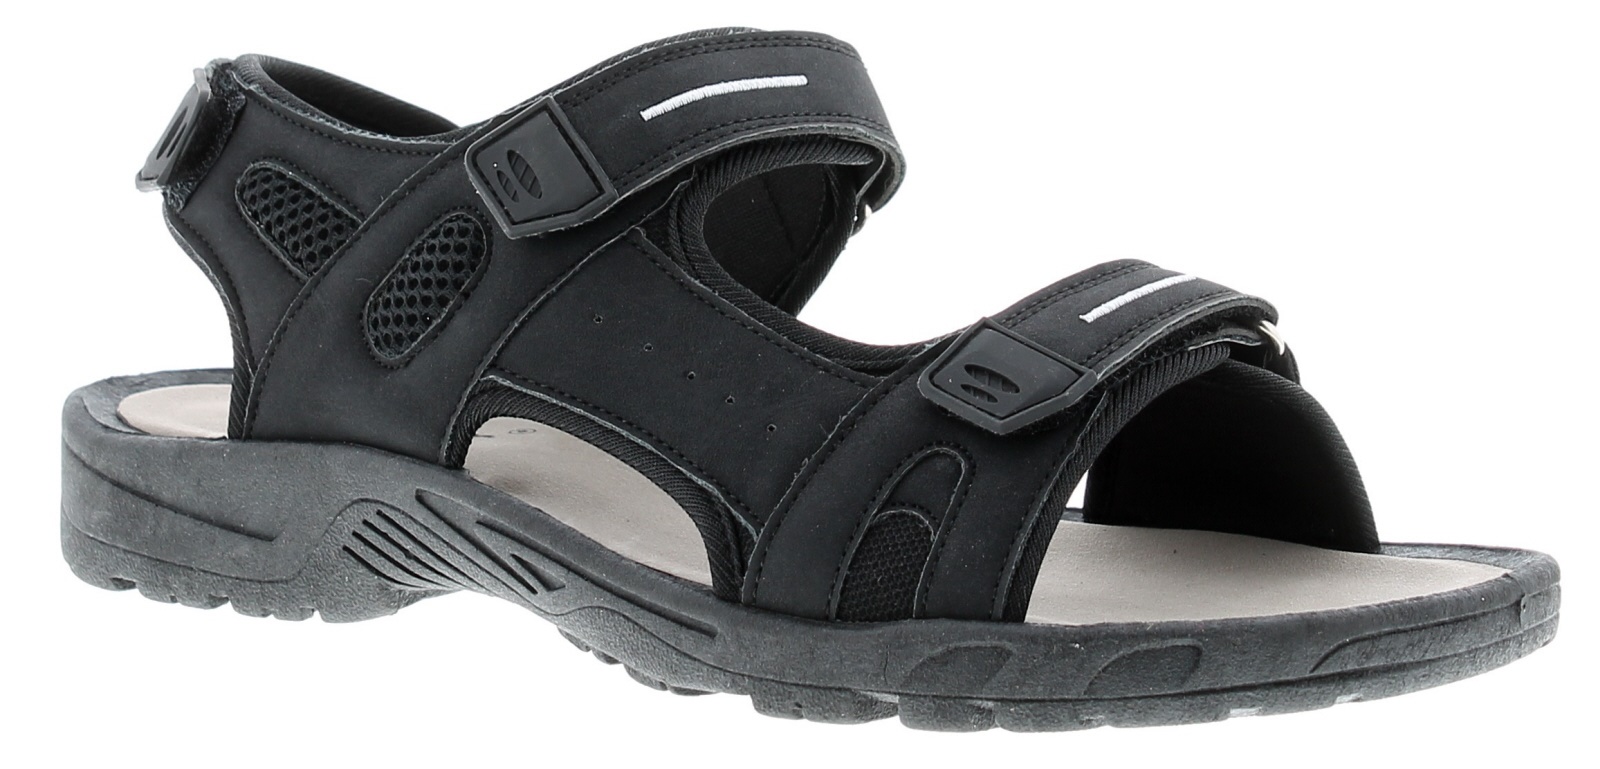 Men's Dr Keller Craig A8709 Double Velcro Sandals - Black